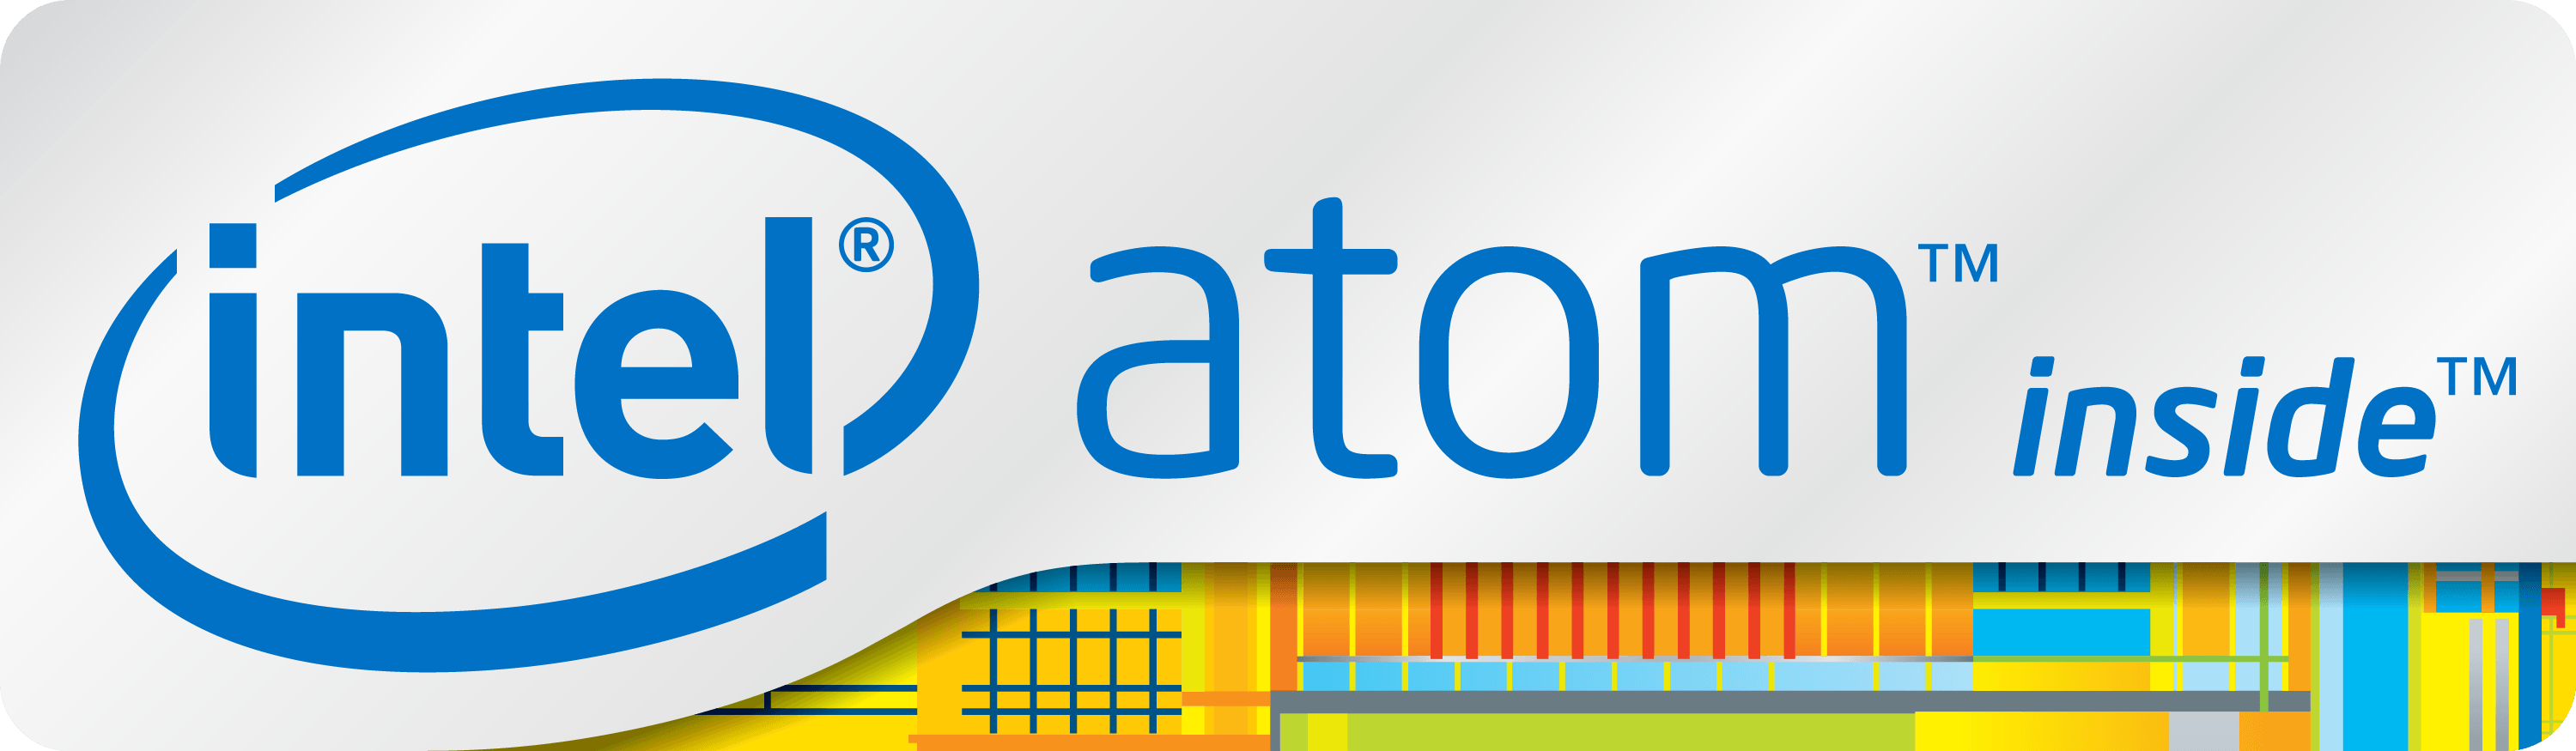 Intel Atom Logo - Intel Atom | Logopedia | FANDOM powered by Wikia